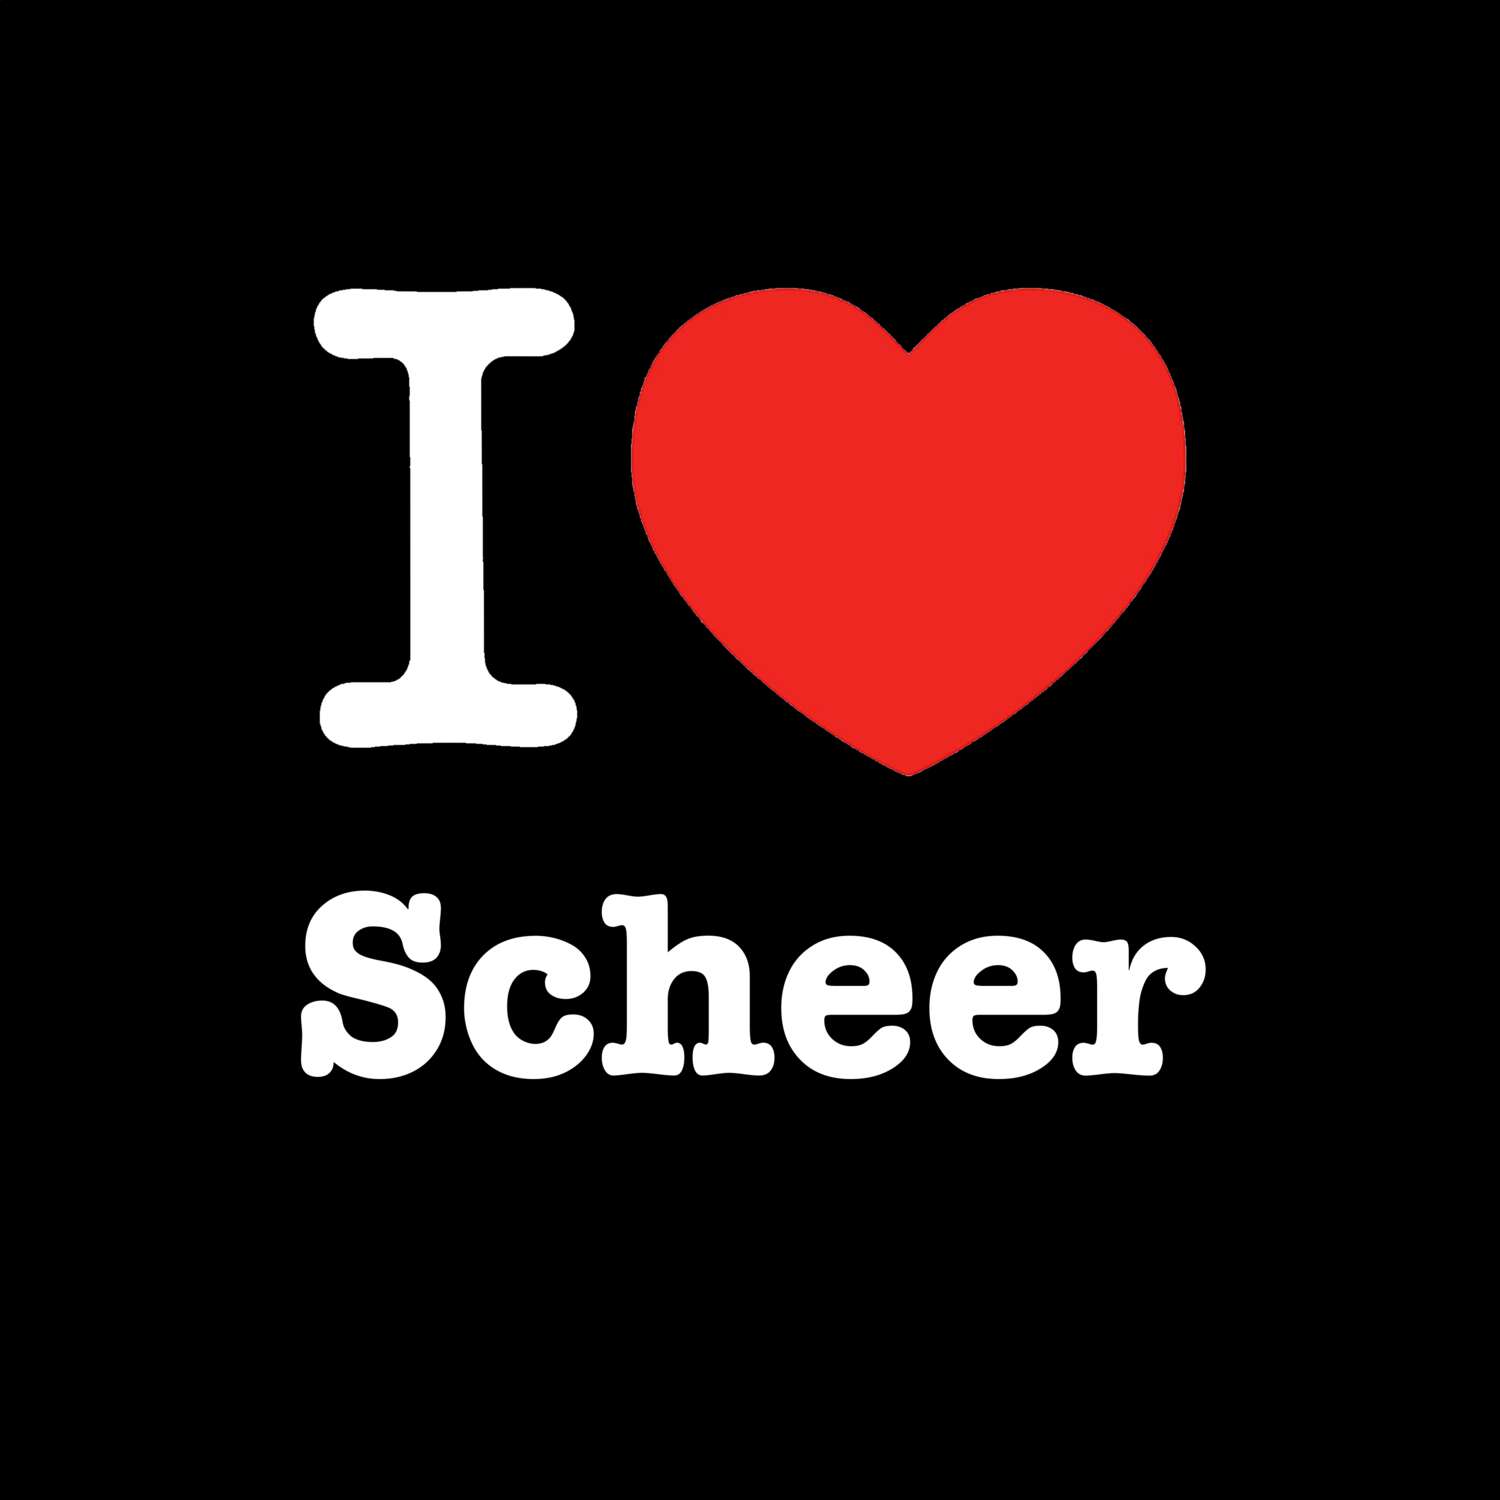 Scheer T-Shirt »I love«